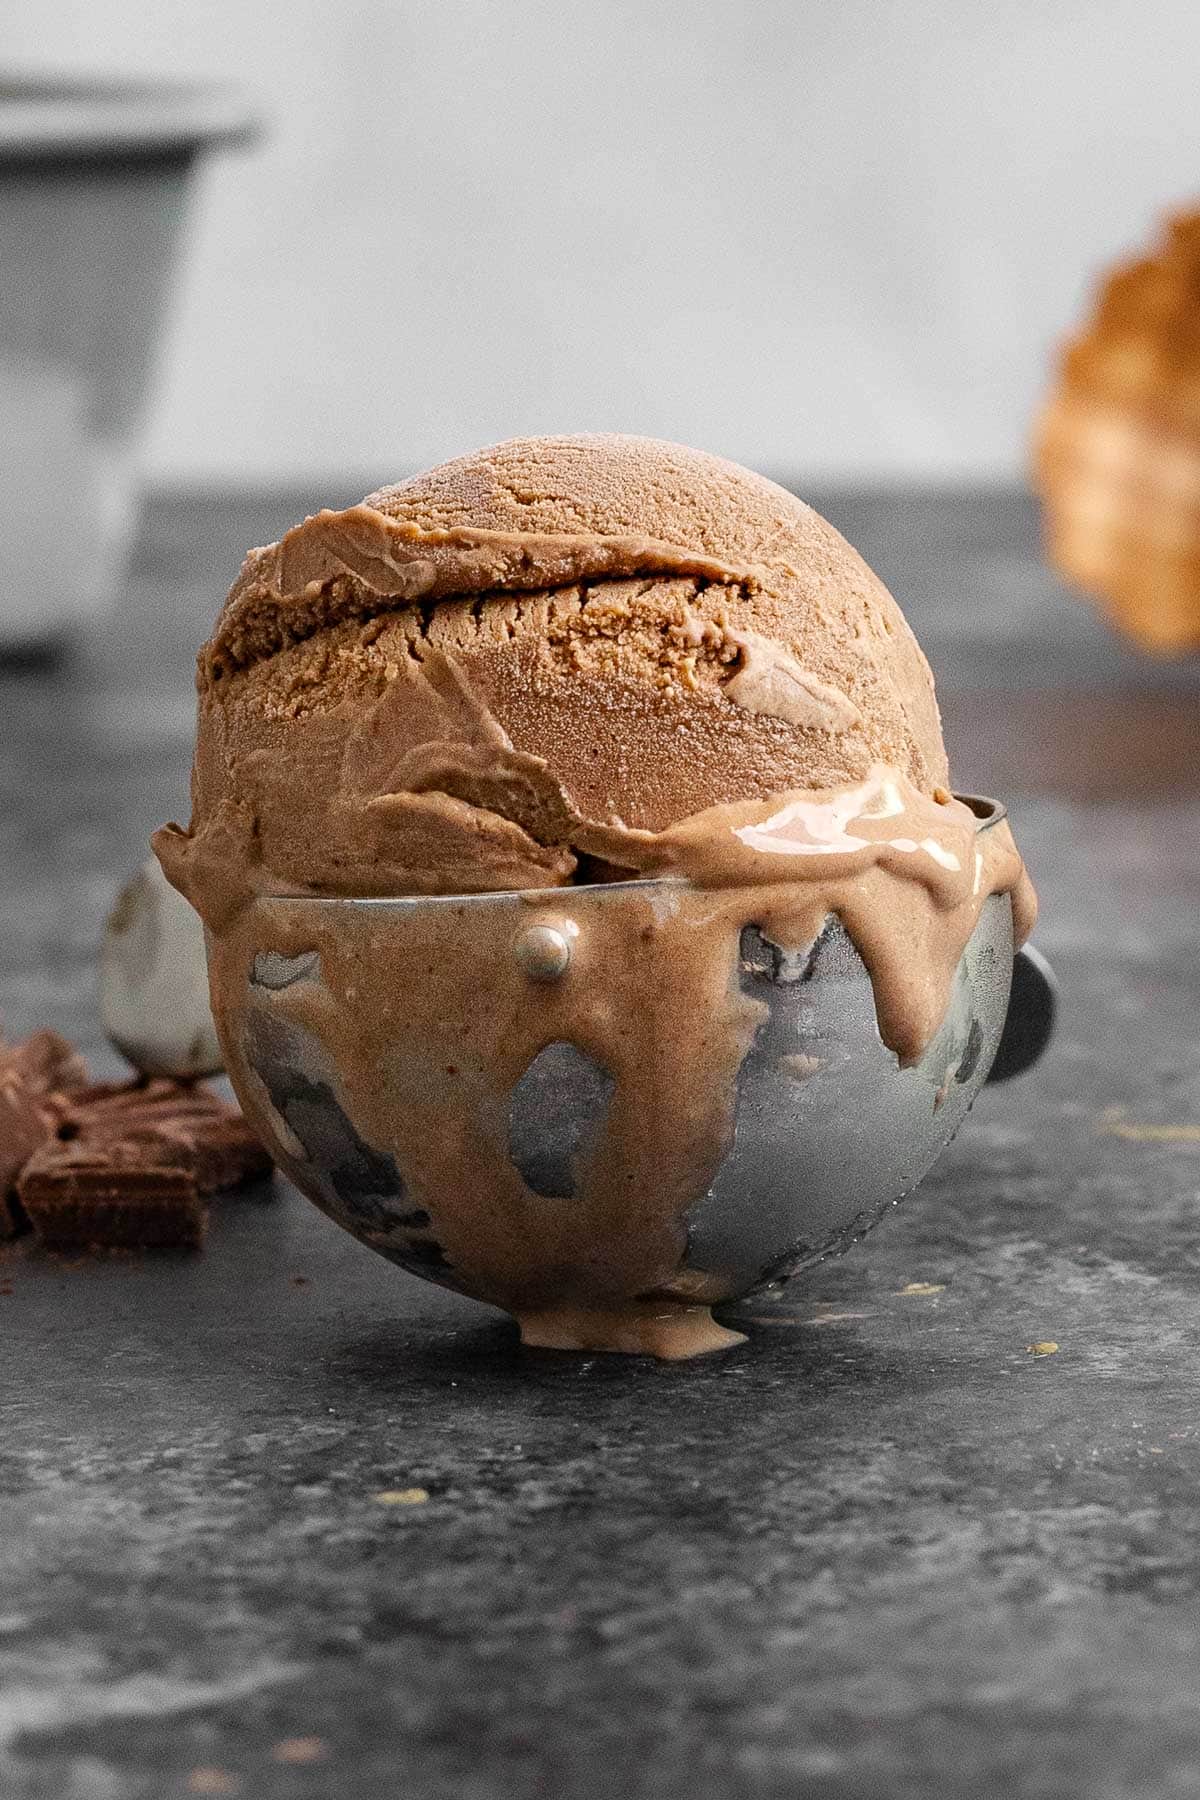 Chocolate Ice Cream scoop in scoop